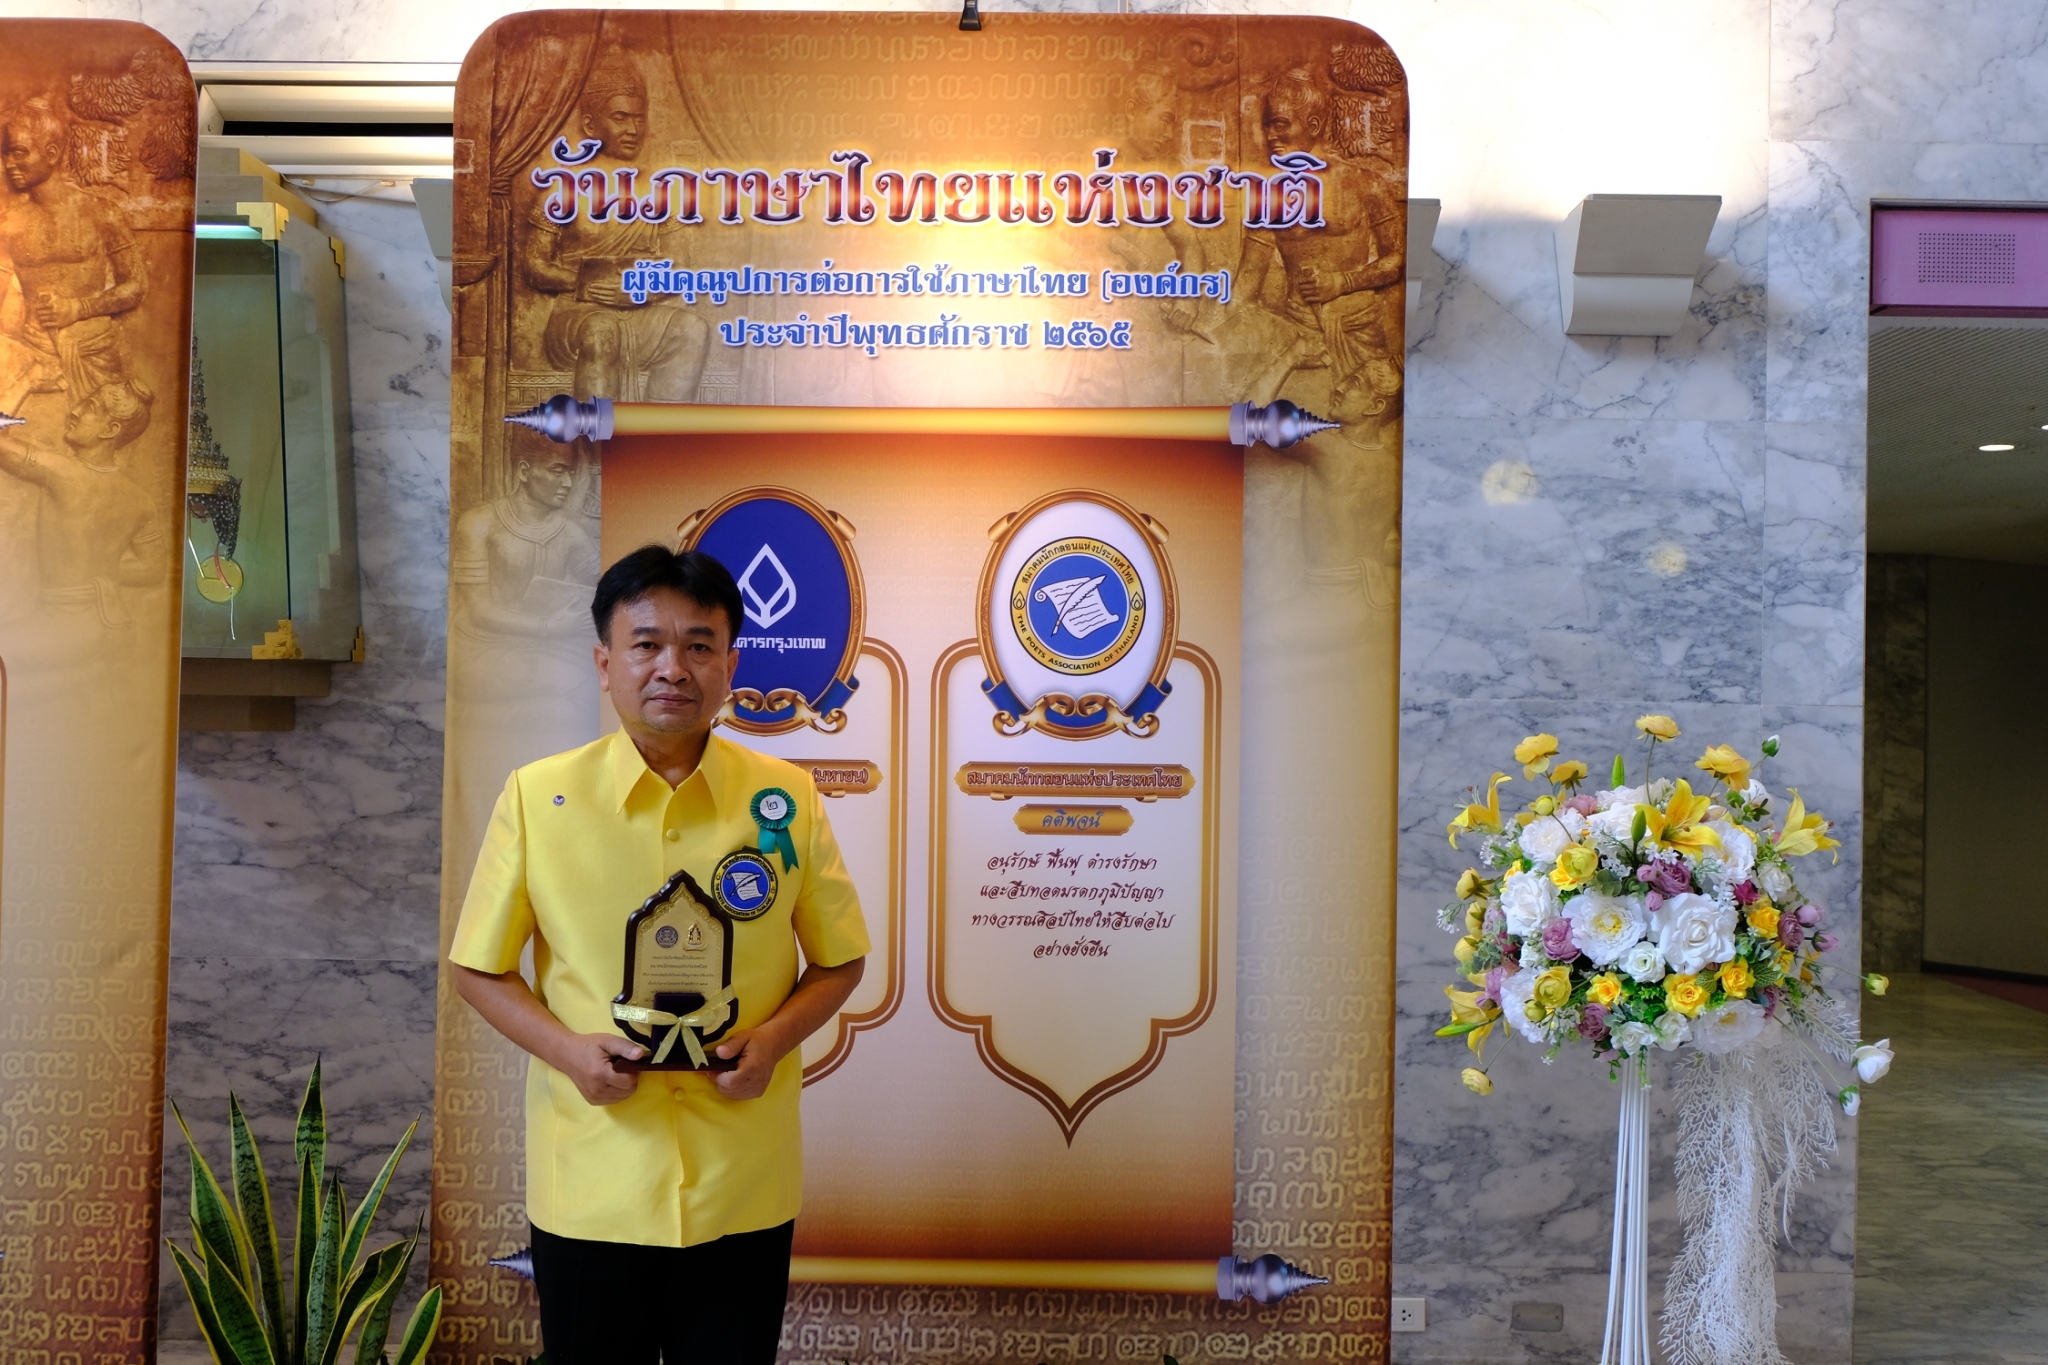 เป็นตัวแทนของสมาคมนักกลอนแห่งประเทศไทย รับรางวัล องค์กรที่มีคุณูปการ